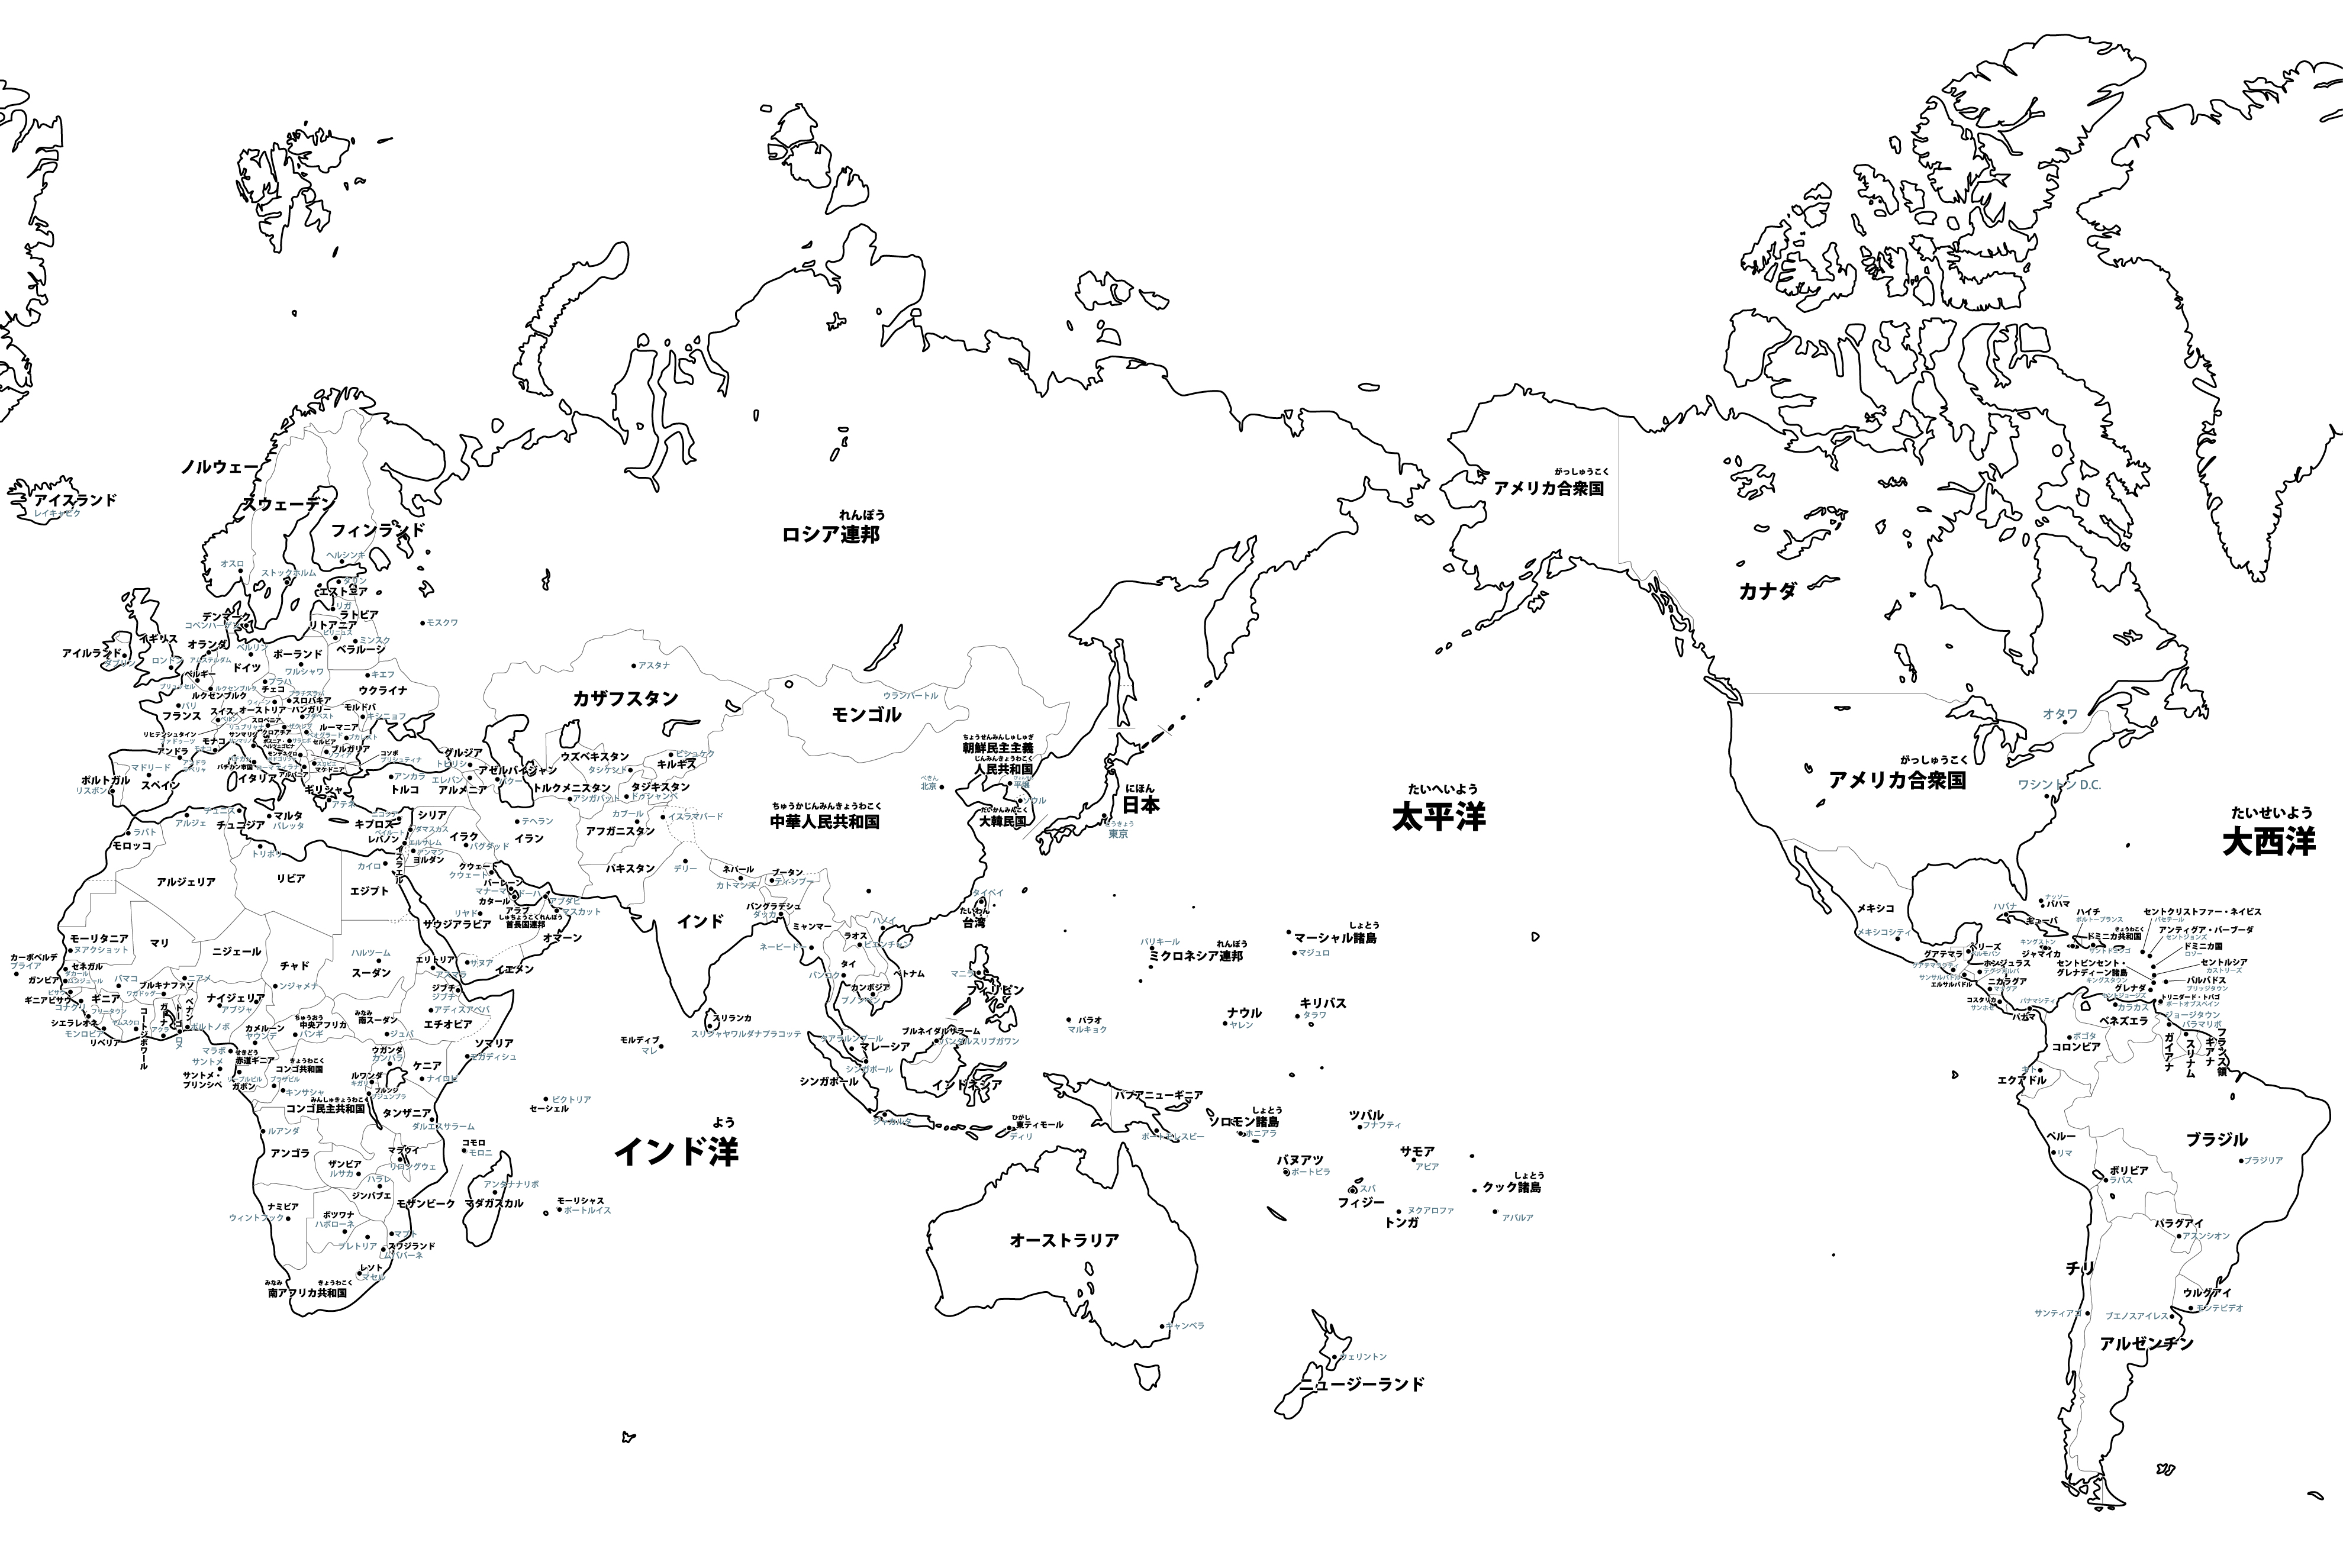 世界地図 国名入り 首都名入り の白地図イラストを無料ダウンロード